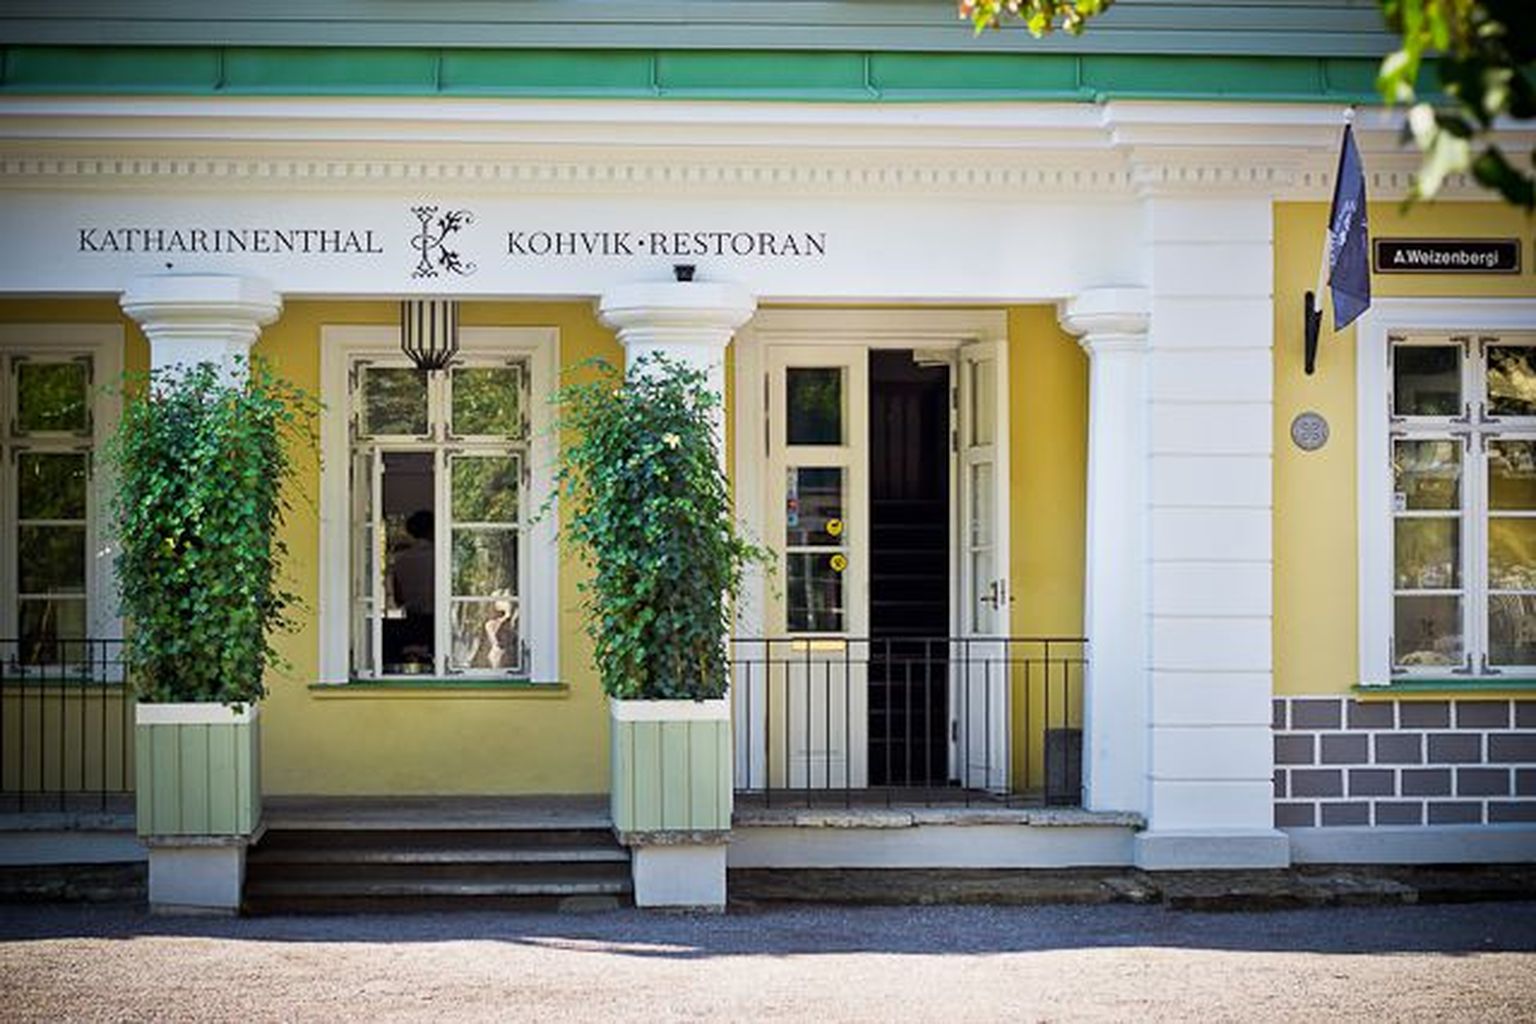 Katharinenthali kohvik asub Tallinnas Kadrioru pargis.